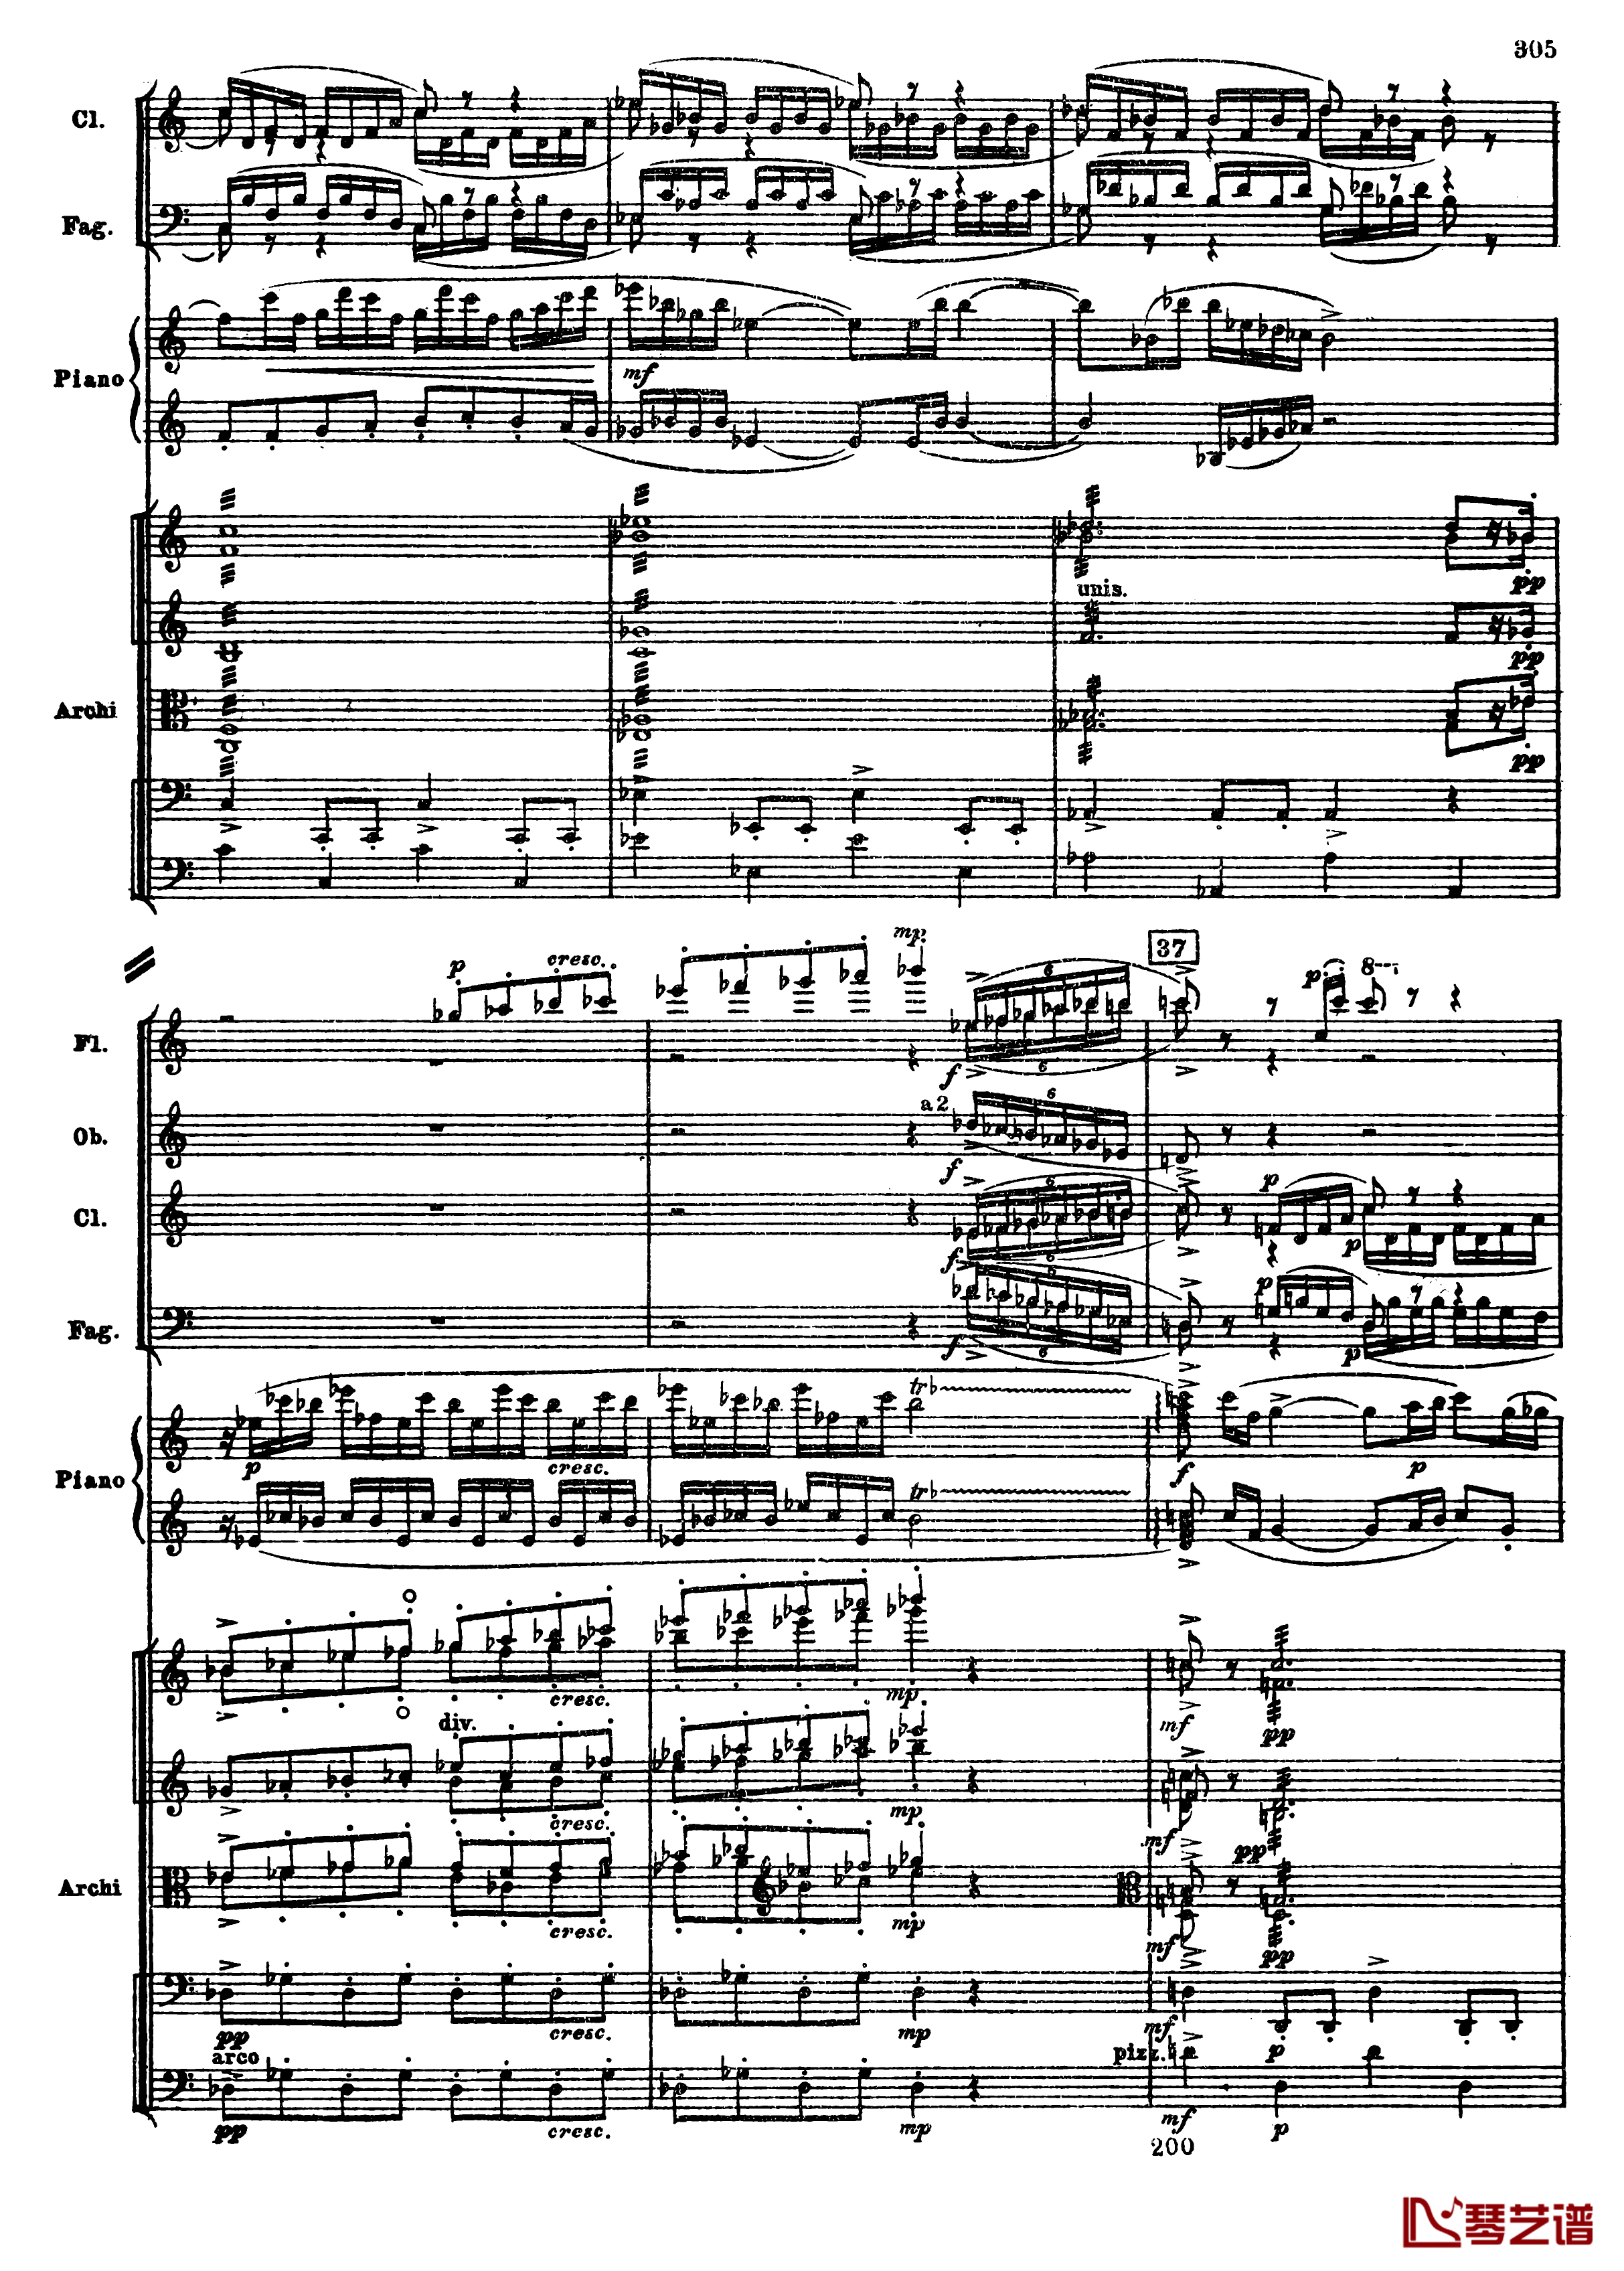 普罗科菲耶夫第三钢琴协奏曲钢琴谱-总谱-普罗科非耶夫37